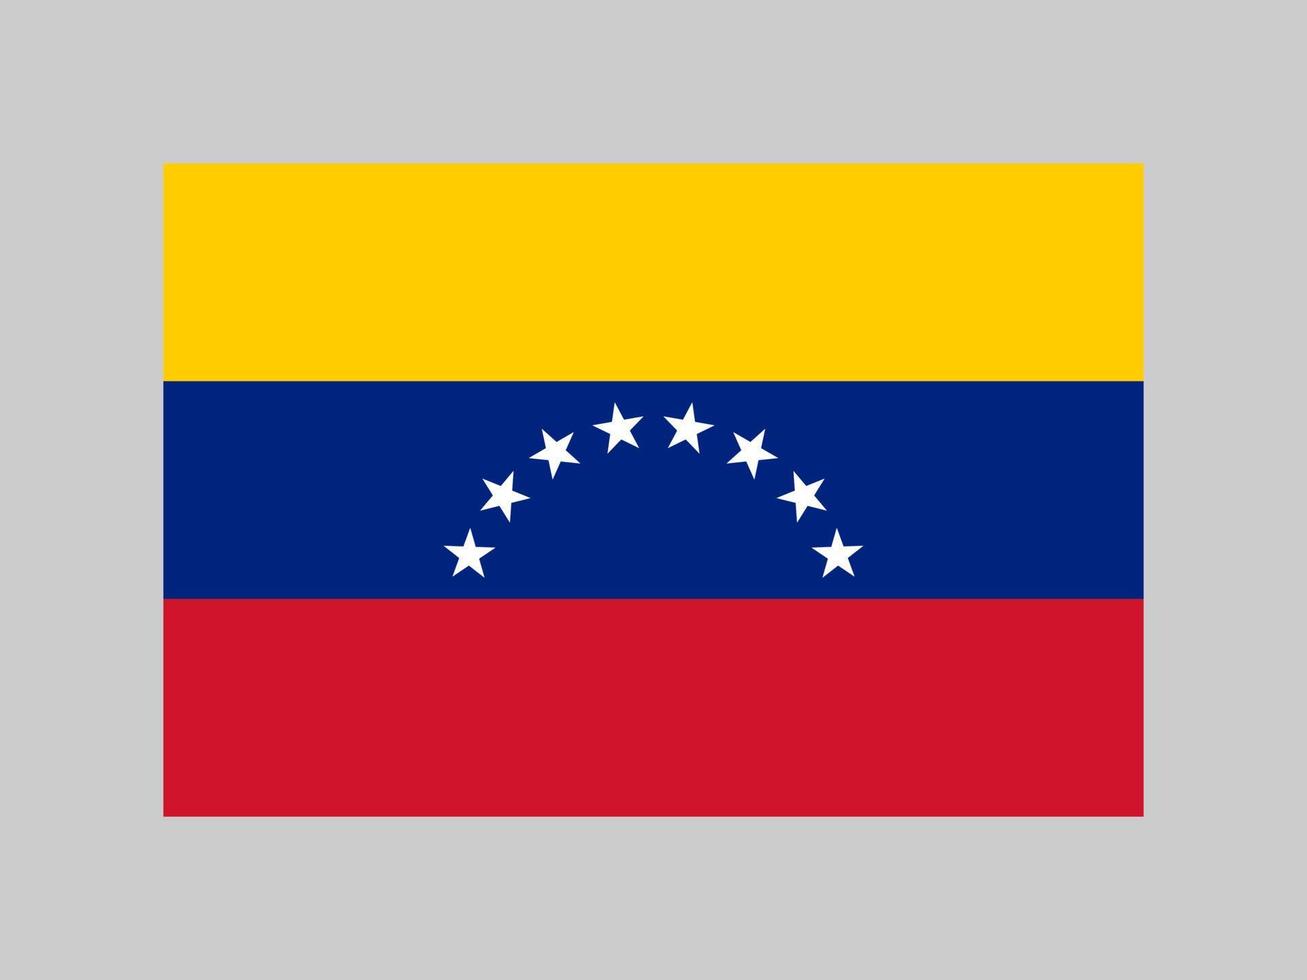 bandeira da venezuela, cores oficiais e proporção. ilustração vetorial. vetor